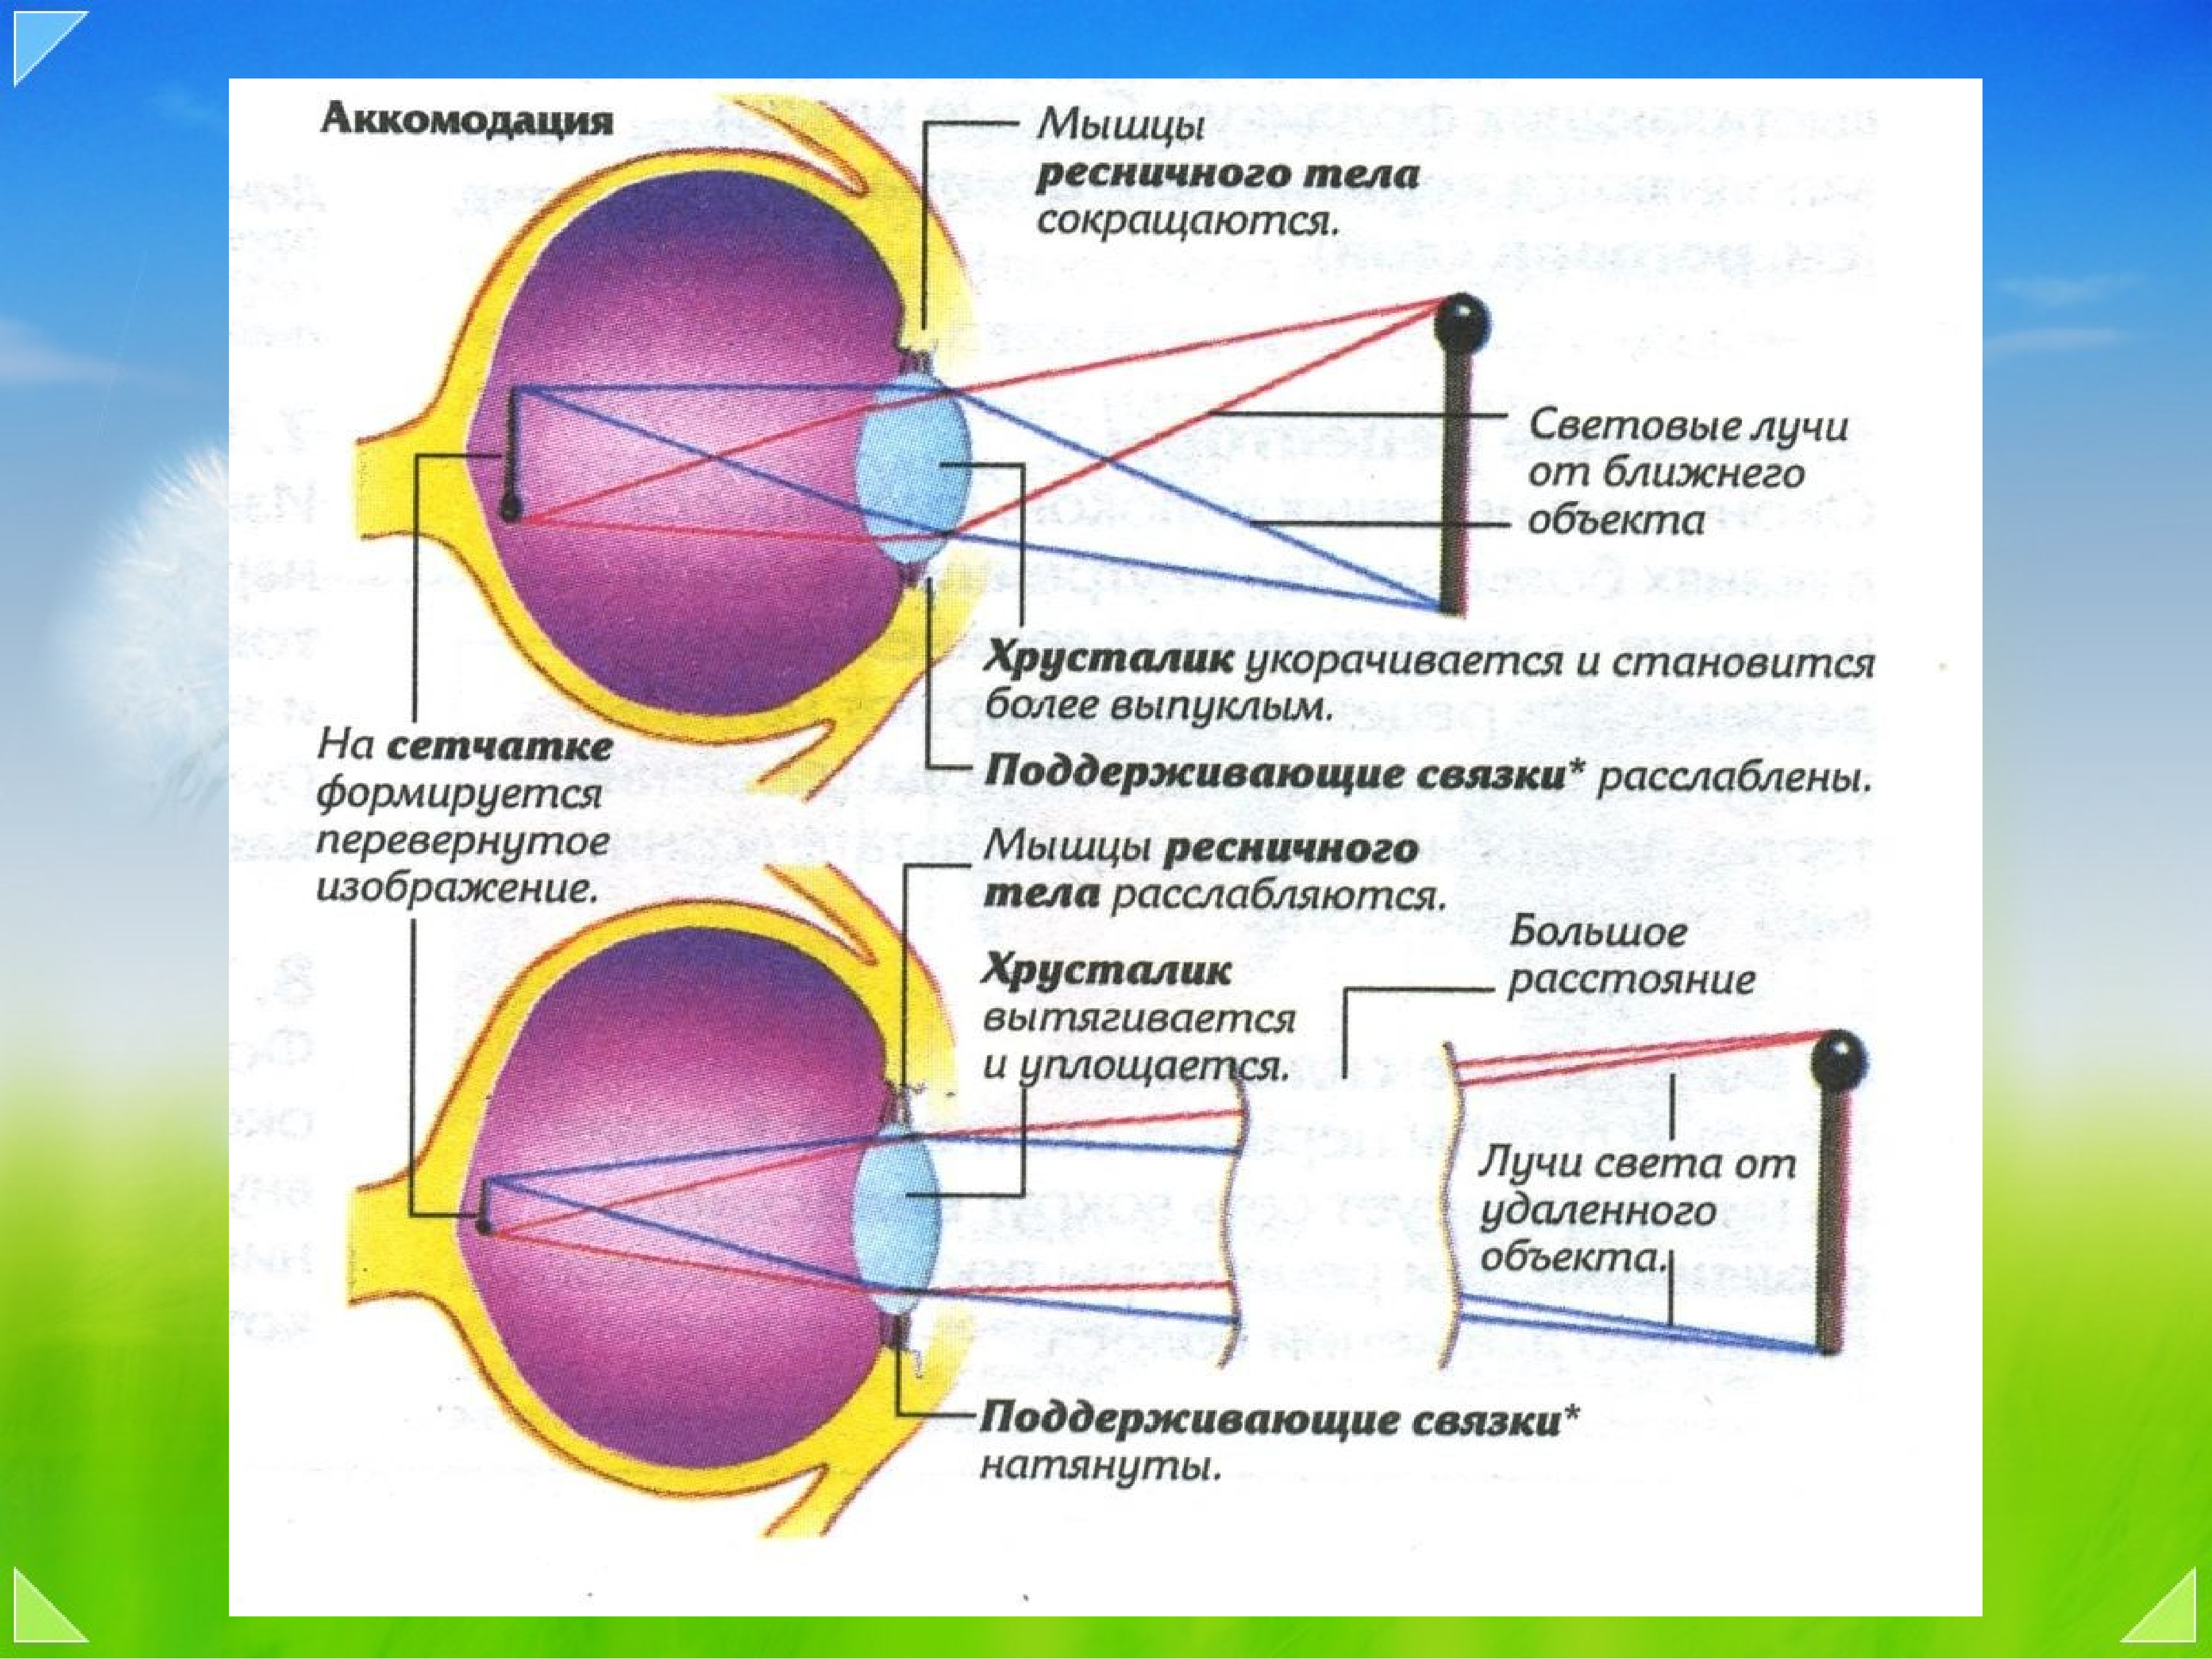 Заболевания аккомодации. Рефракция и аккомодация глаза. Механизмы аккомодации и рефракции рисунок. Спазм аккомодации схема. Аккомодация хрусталика глаза.